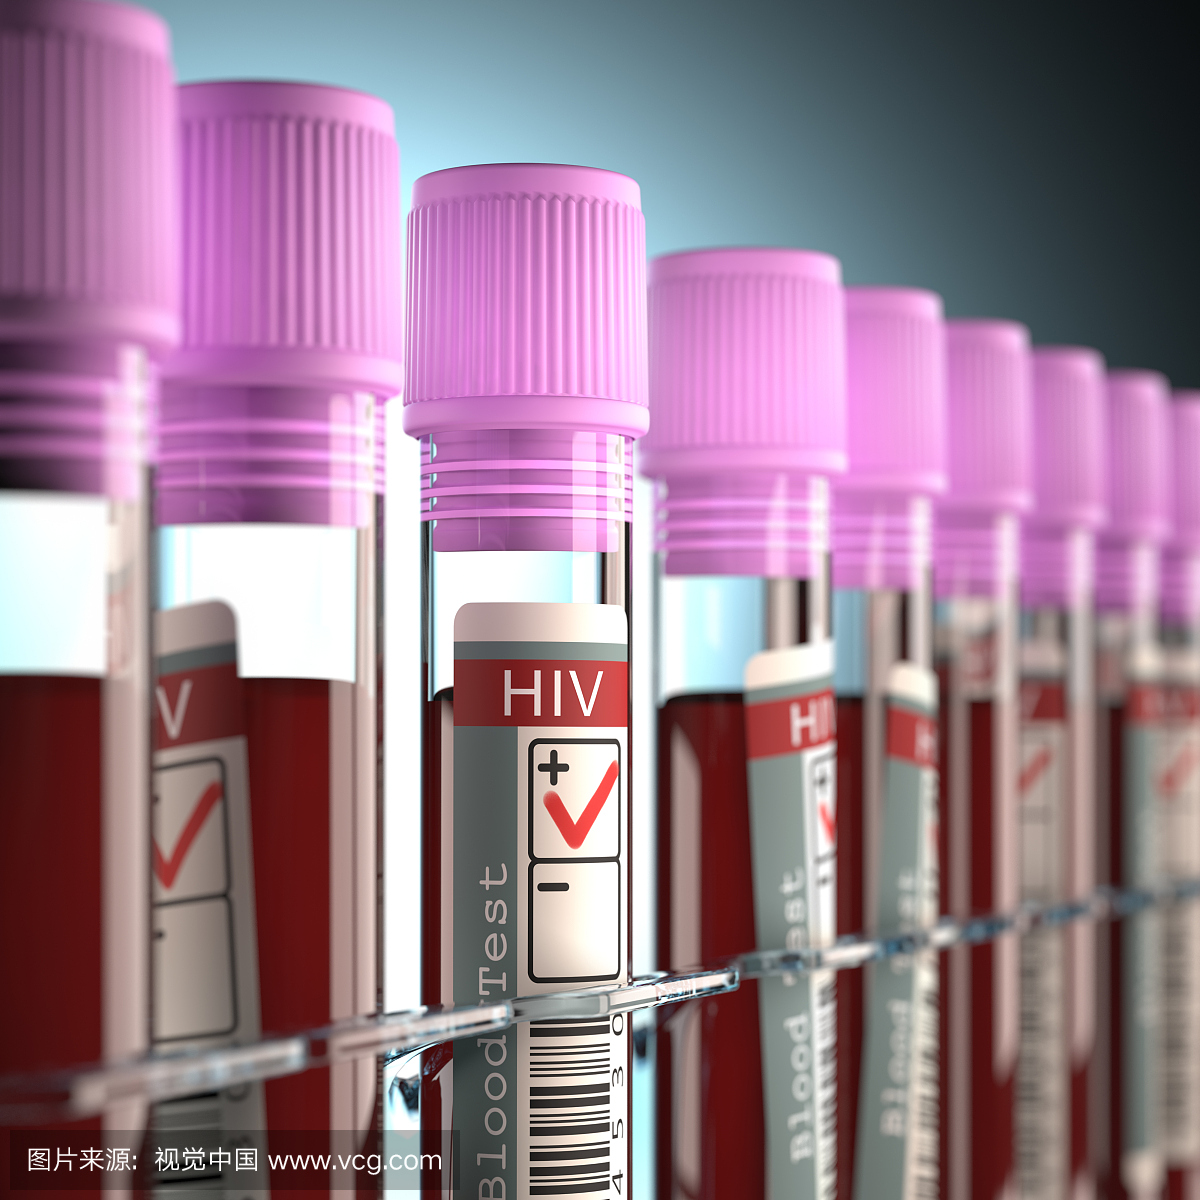 血液样本用于艾滋病毒检测,插图